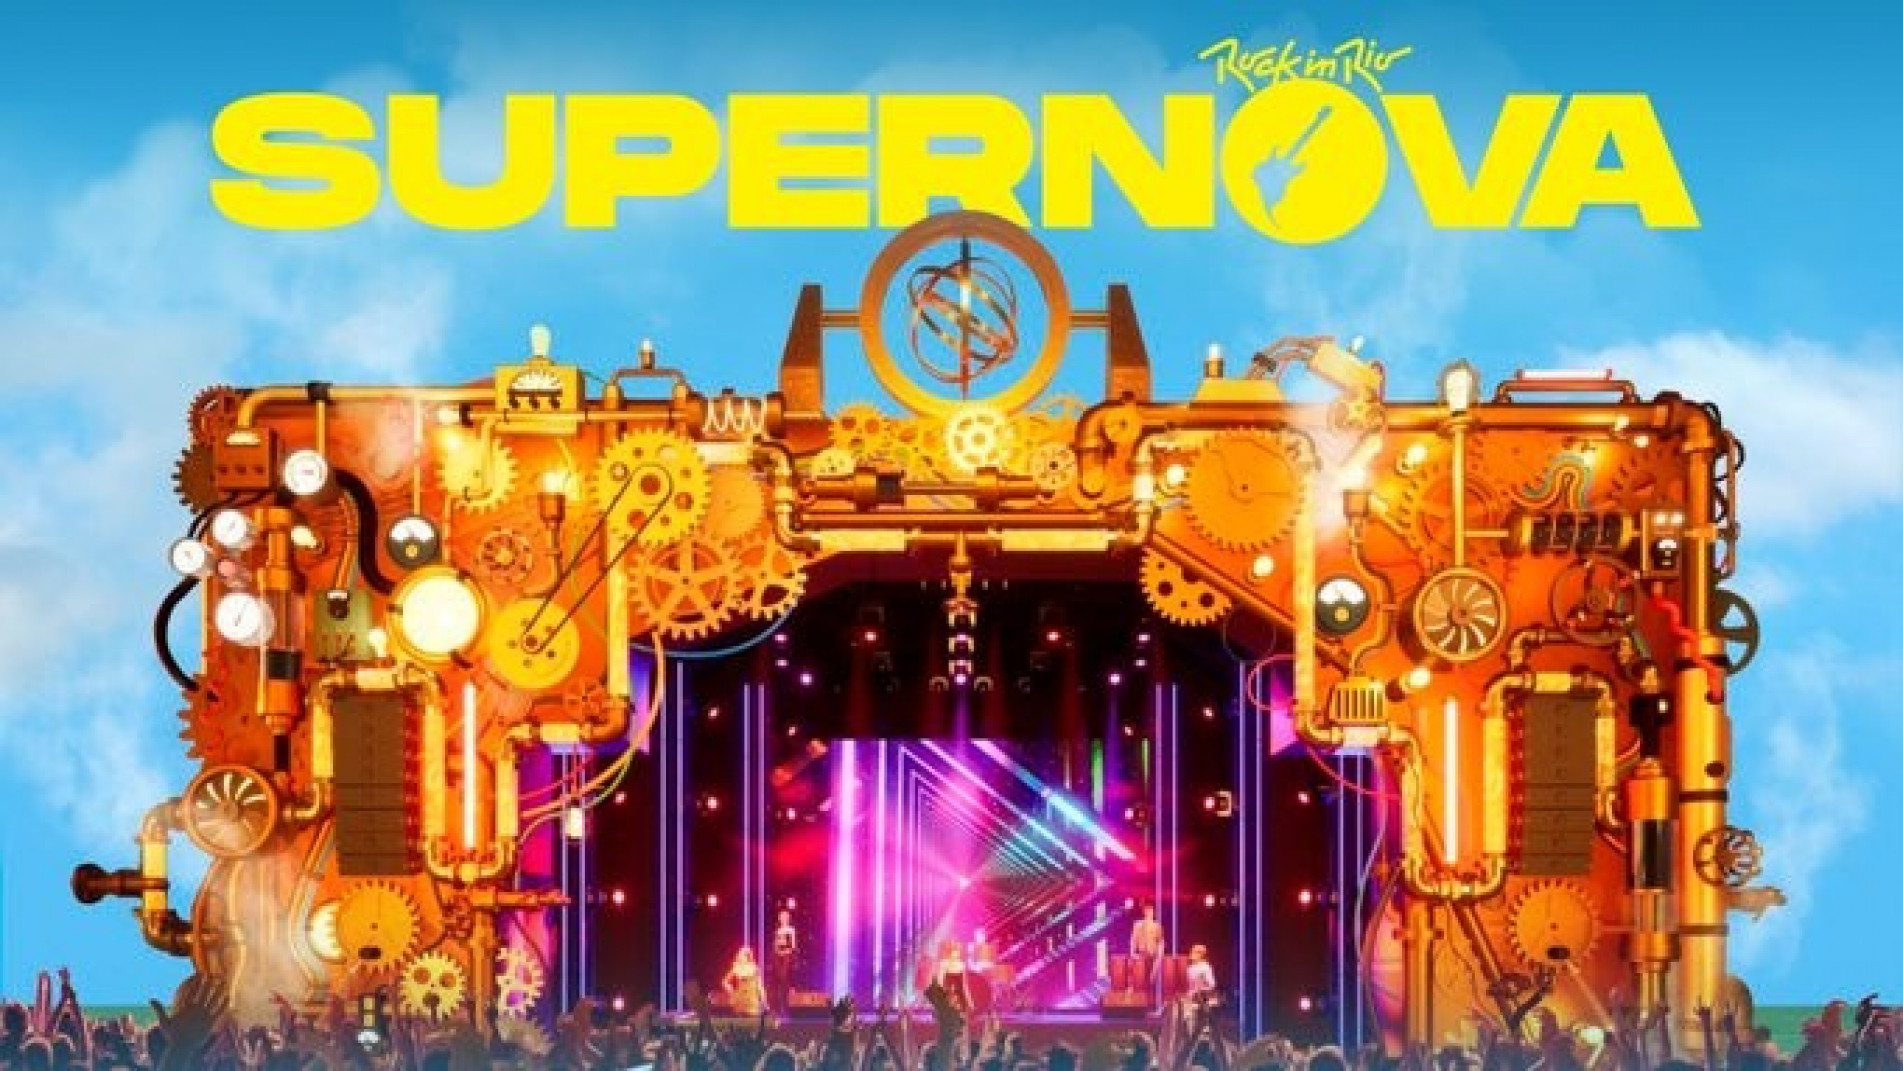 Rock in Rio anuncia lineup completo do Palco Supernova